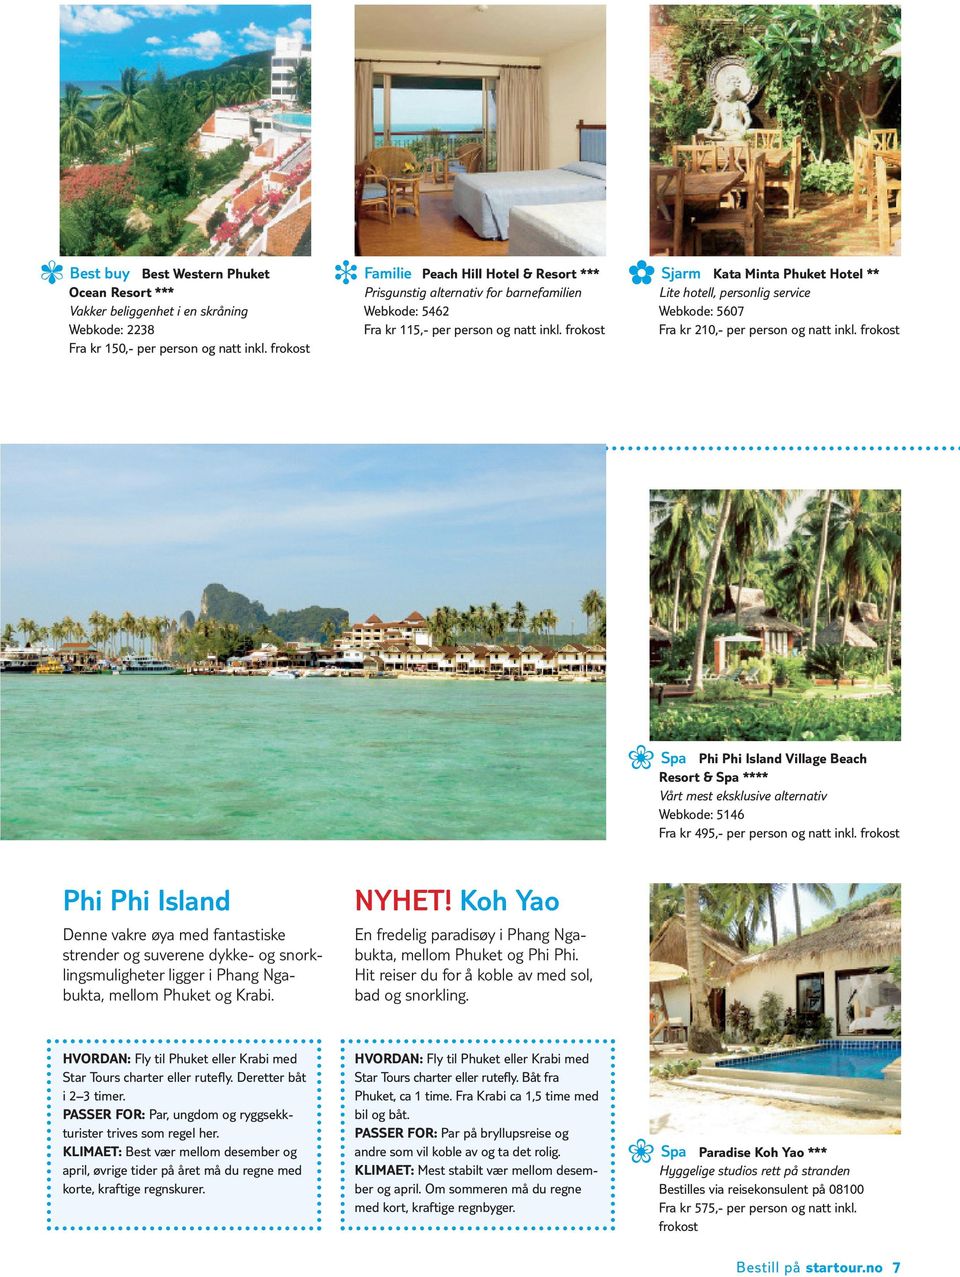 Spa Phi Phi Island Village Beach Resort & Spa **** Vårt mest eksklusive alternativ Webkode: 5146 Fra kr 495,- per person og natt inkl.